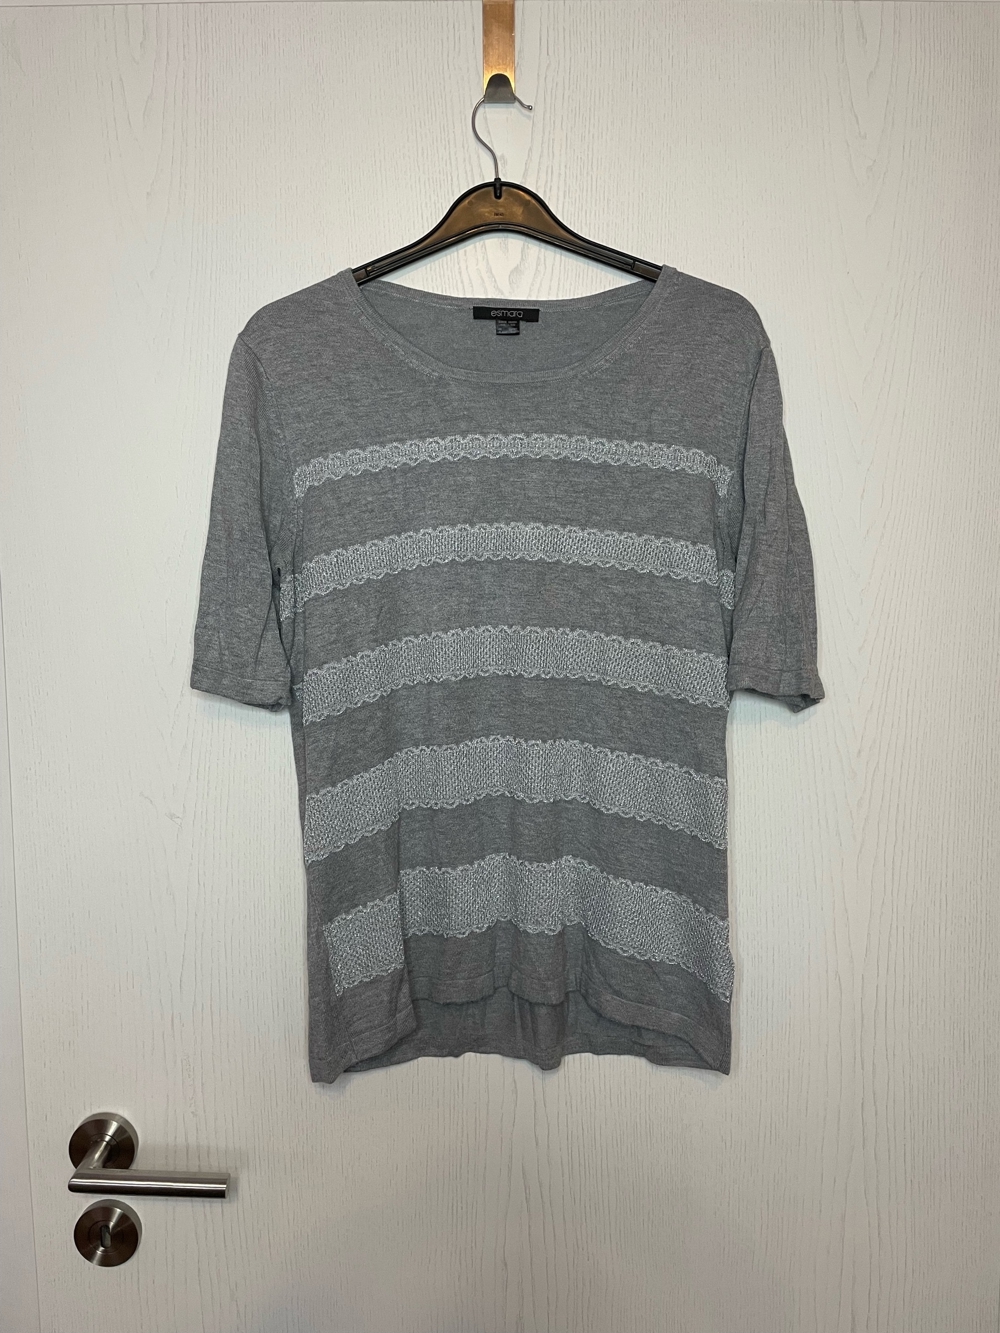 T-Shirt mit Glitzerstreifen von Esmara, grau, Größe L, 44/46